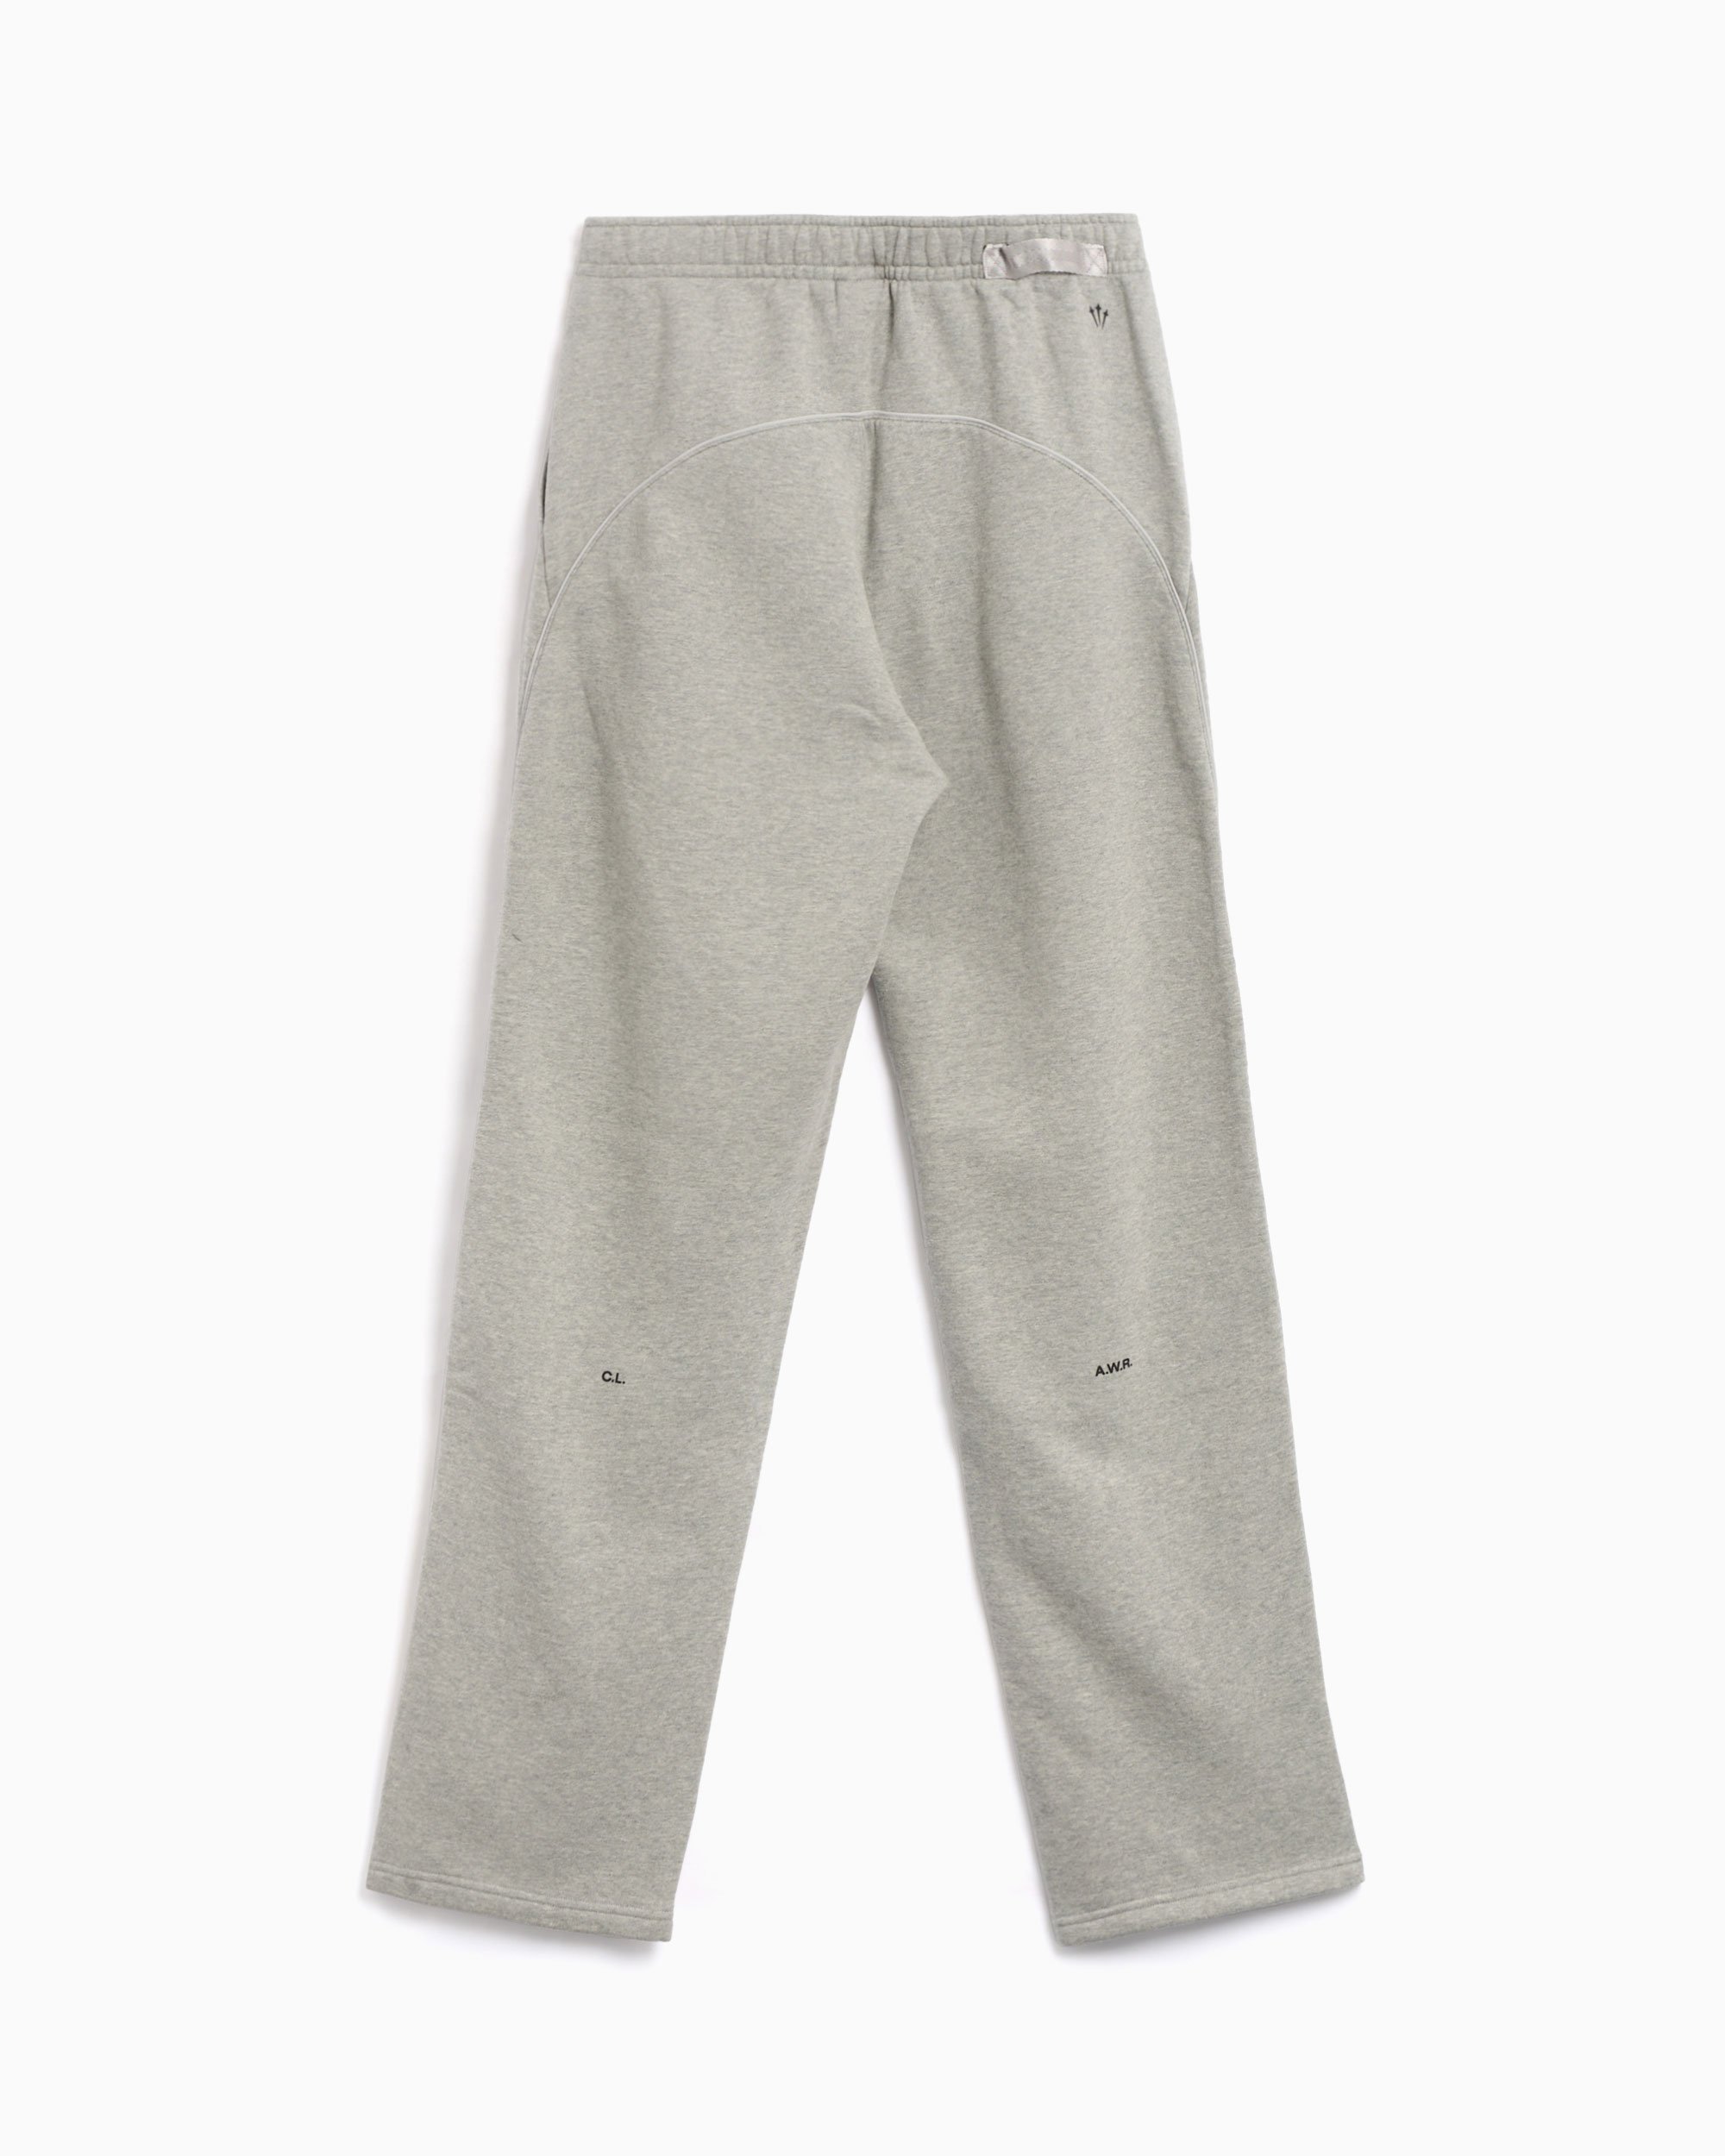 NIKE × NOCTA Fleece Pants Grey XL 2